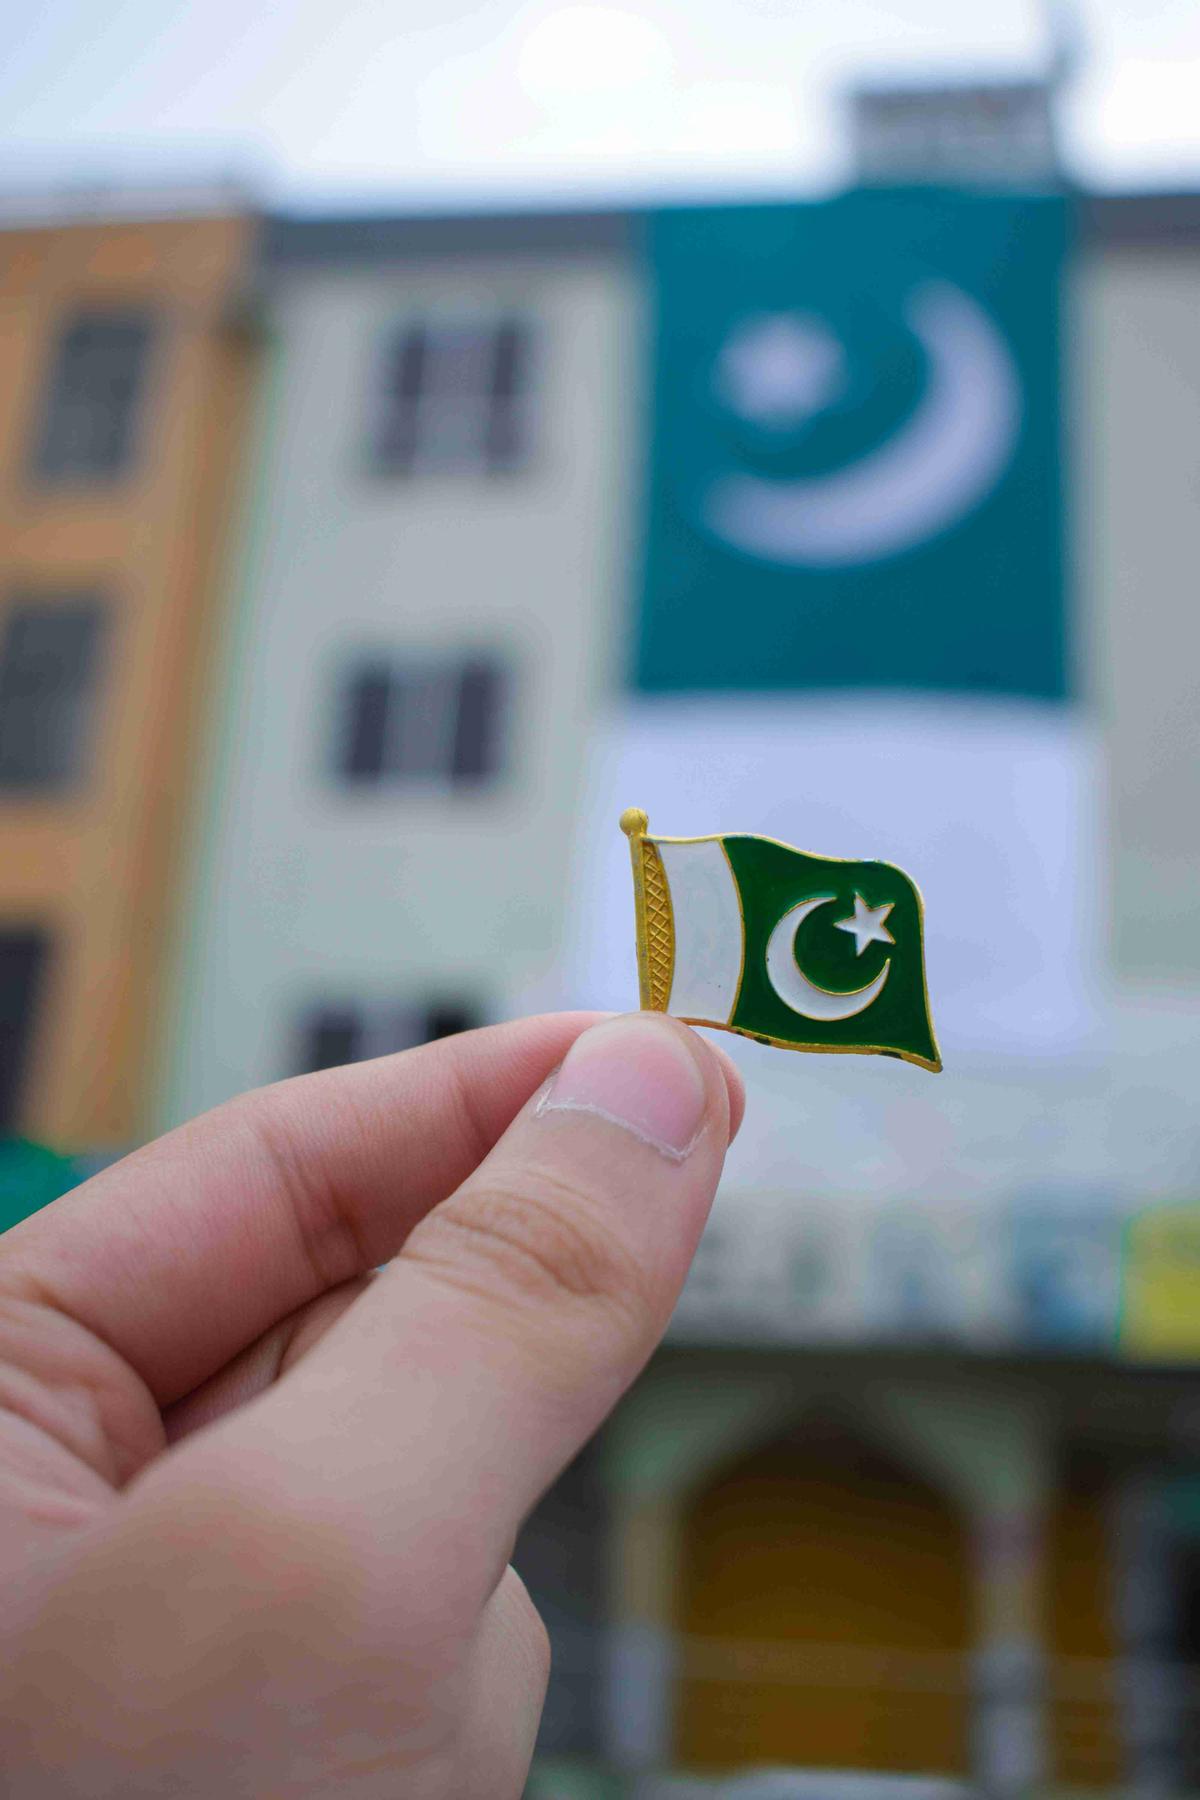 Sosteniendo el pin de la bandera pakistaní con el telón de fondo de la bandera